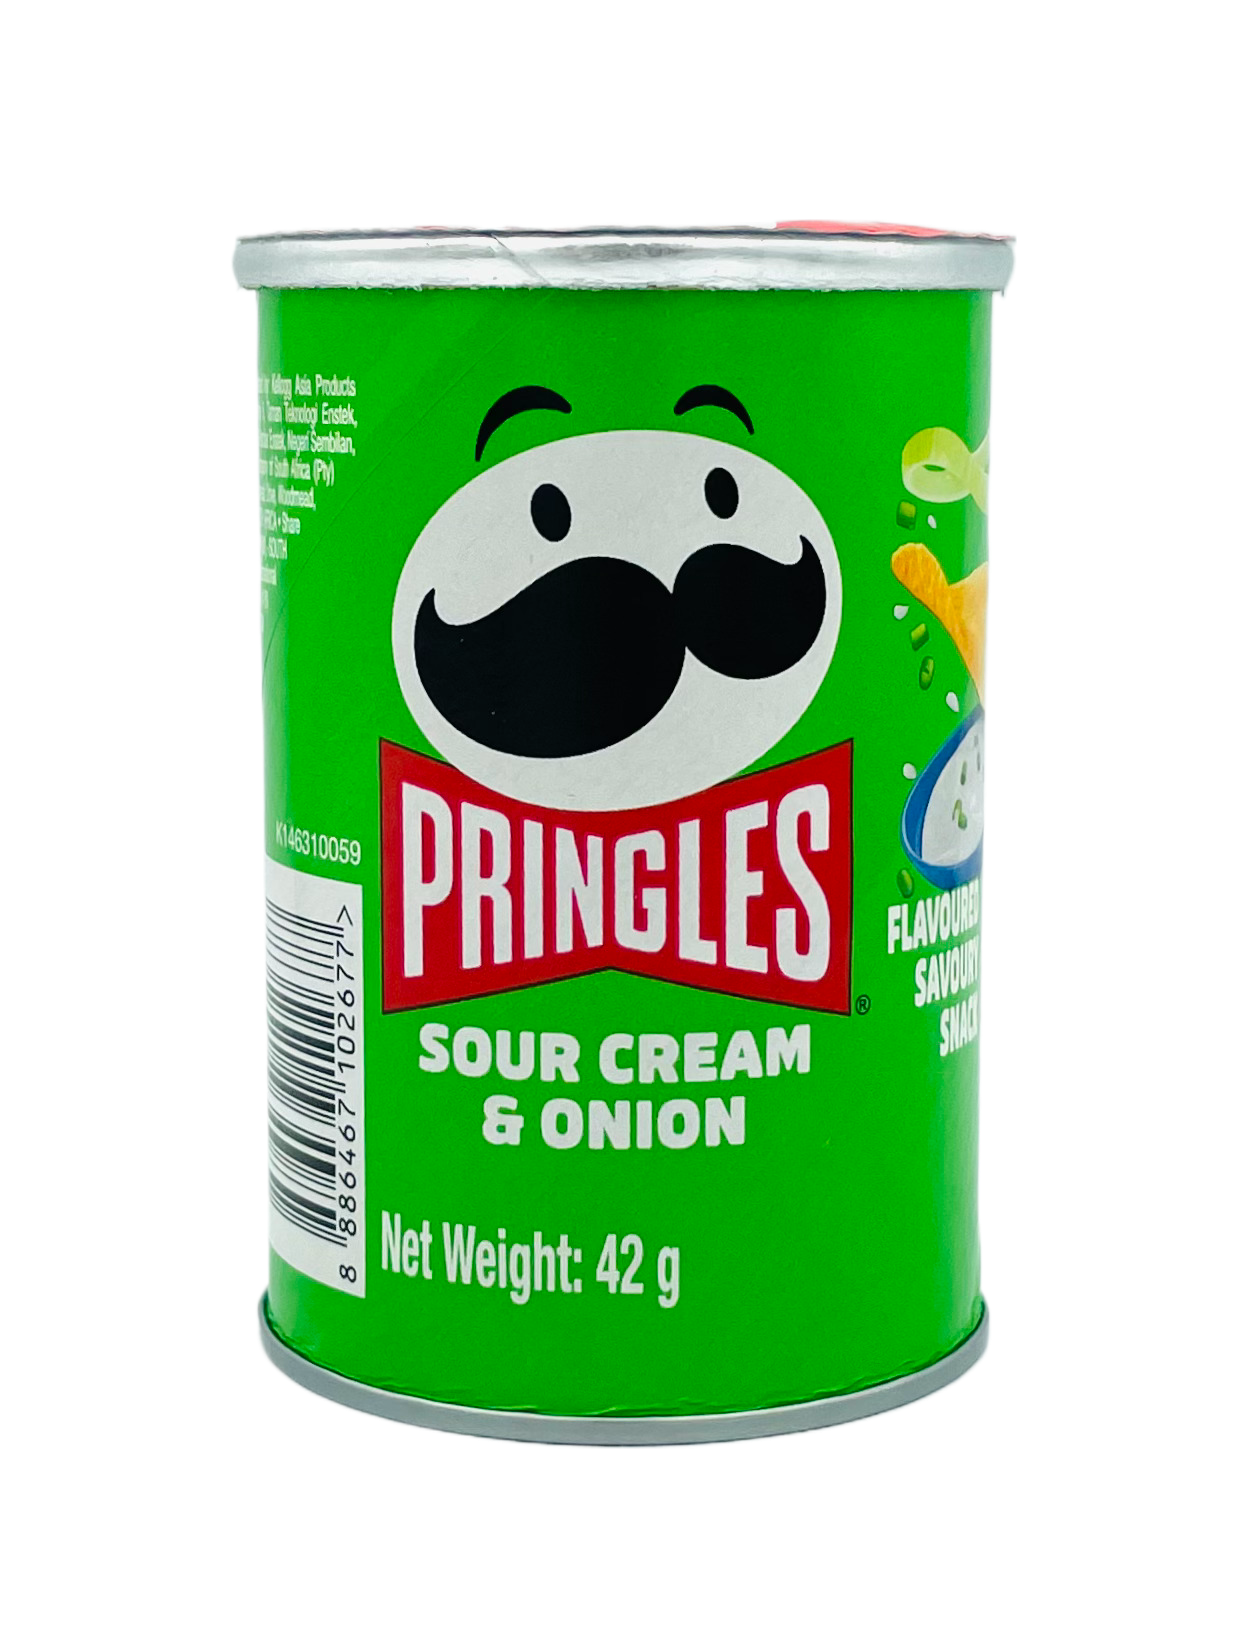 Pringles Sour Cream & Onion 42g